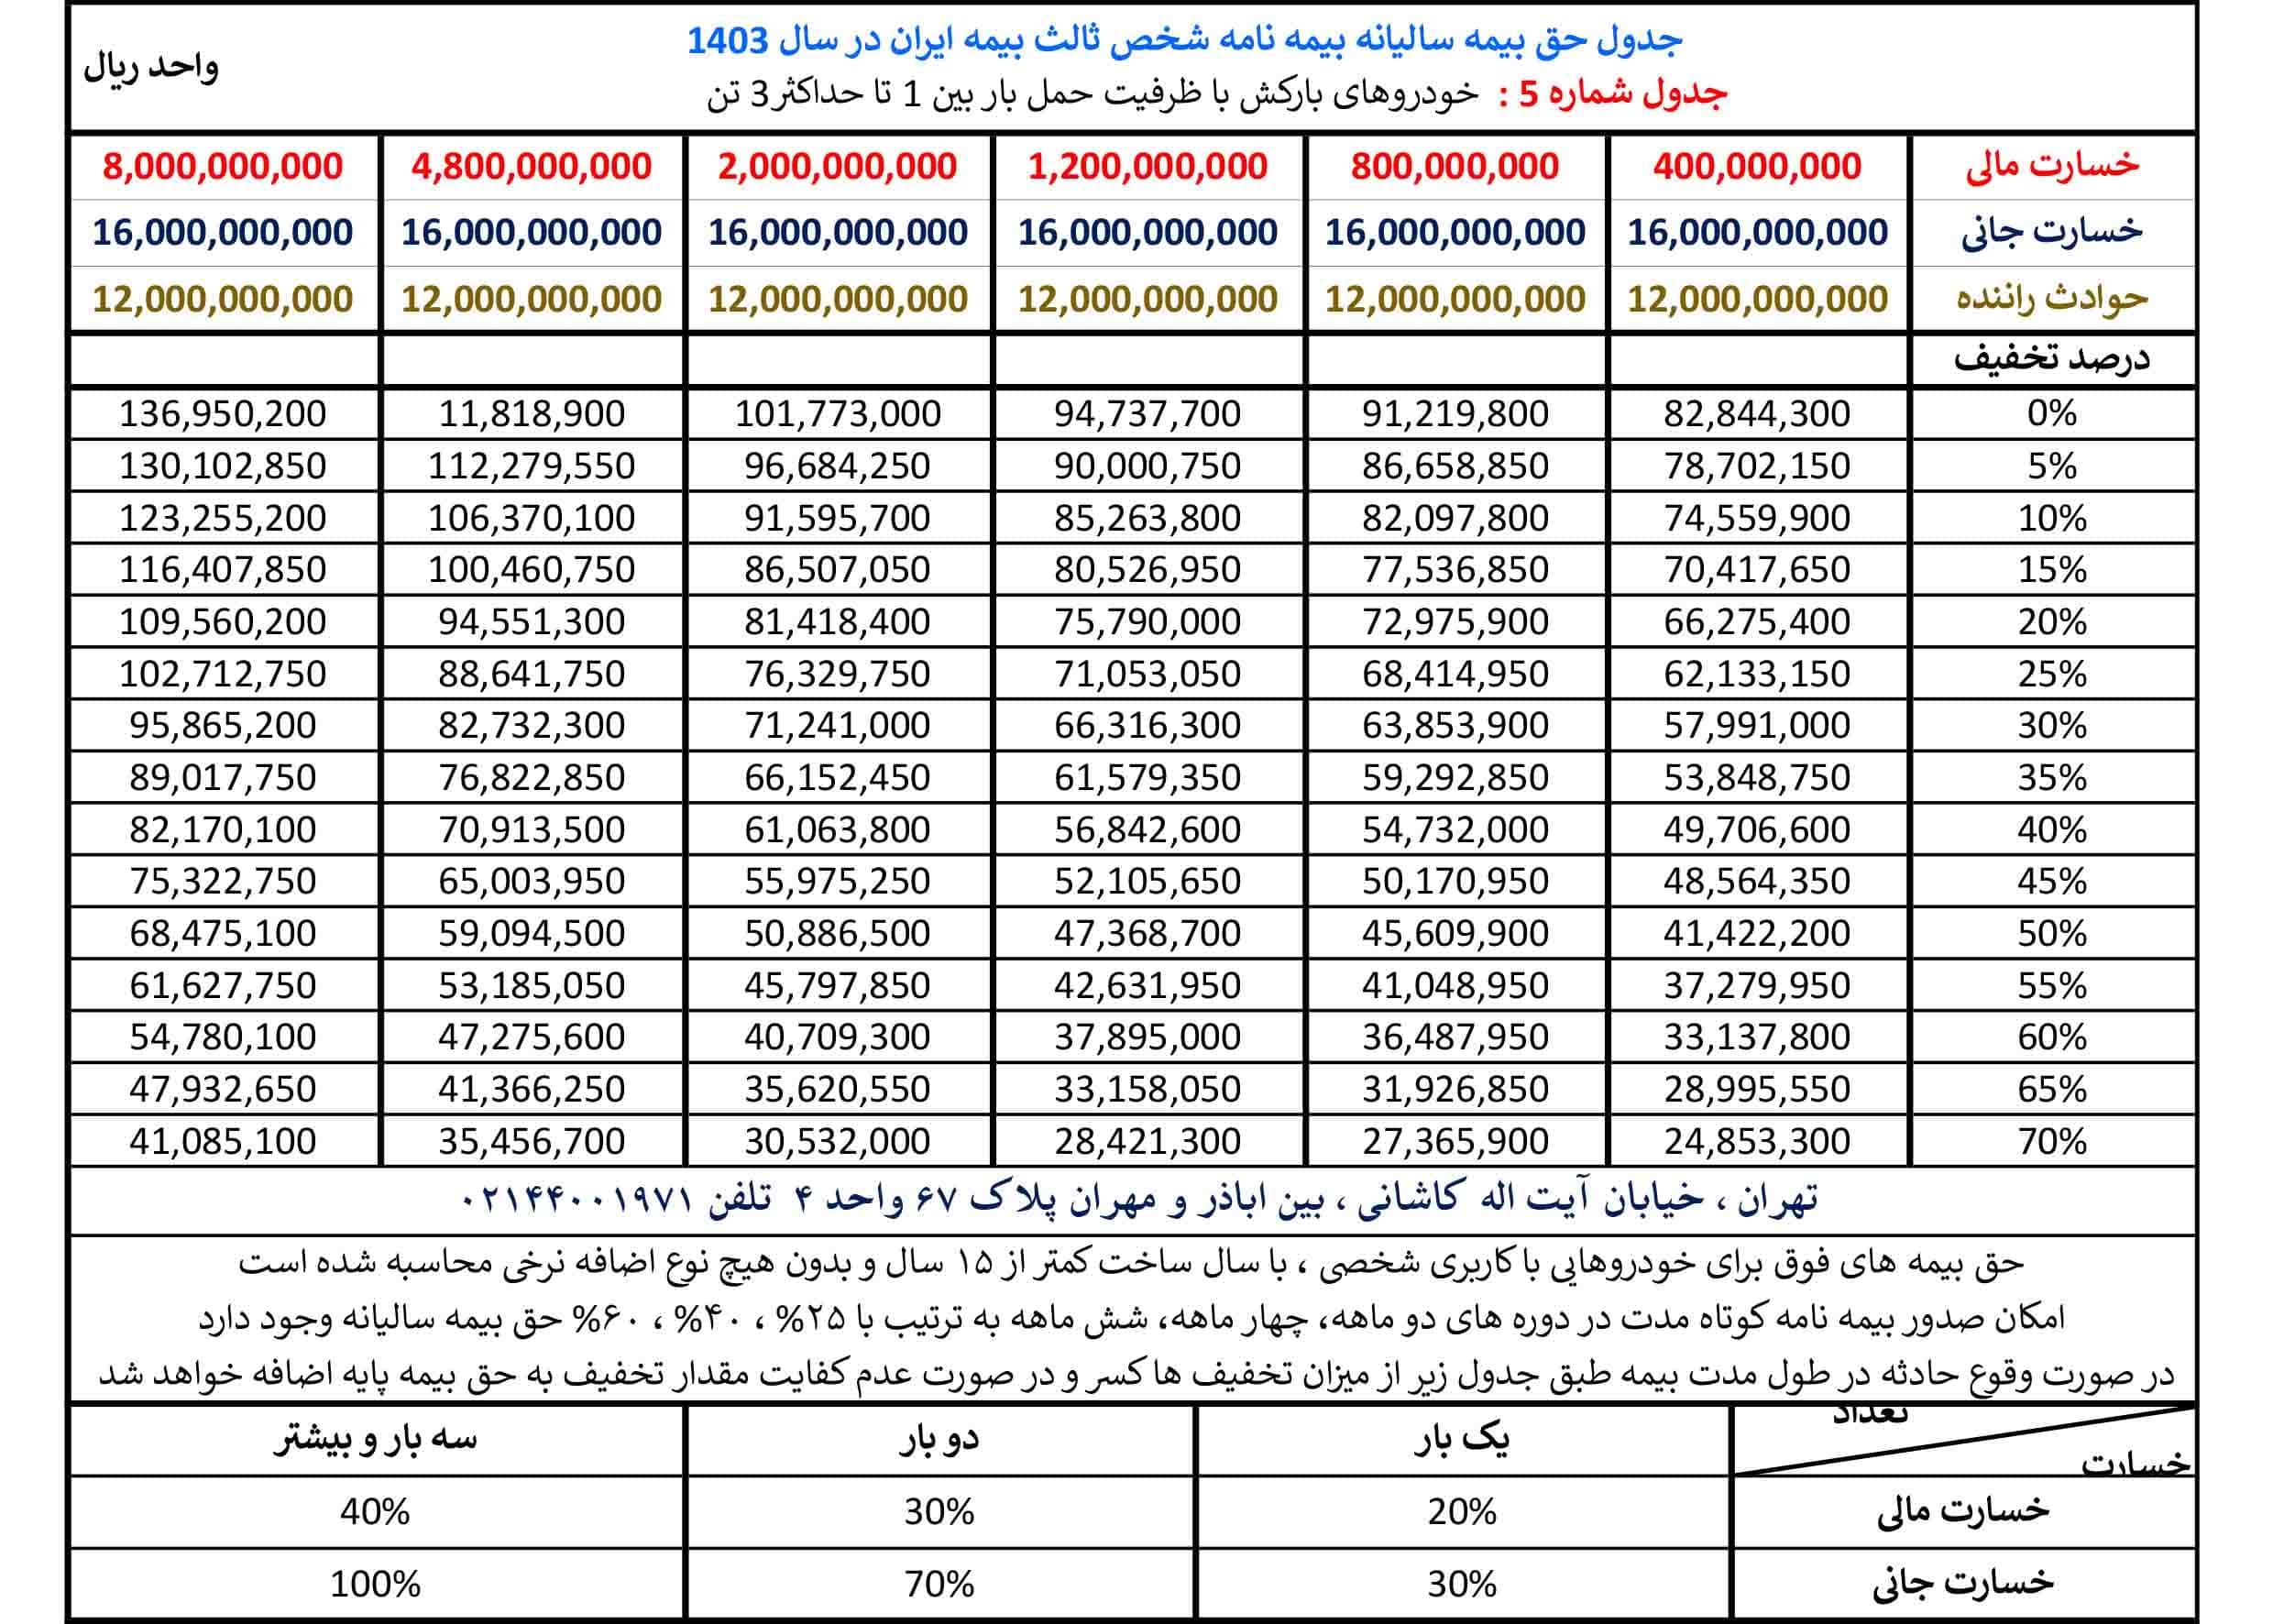 جدول حق بیمه بیمه شخص ثالث بیمه ایران در سال 1403 مربوط به گروه بارکش ها با ظرفیت یک تا سه تن